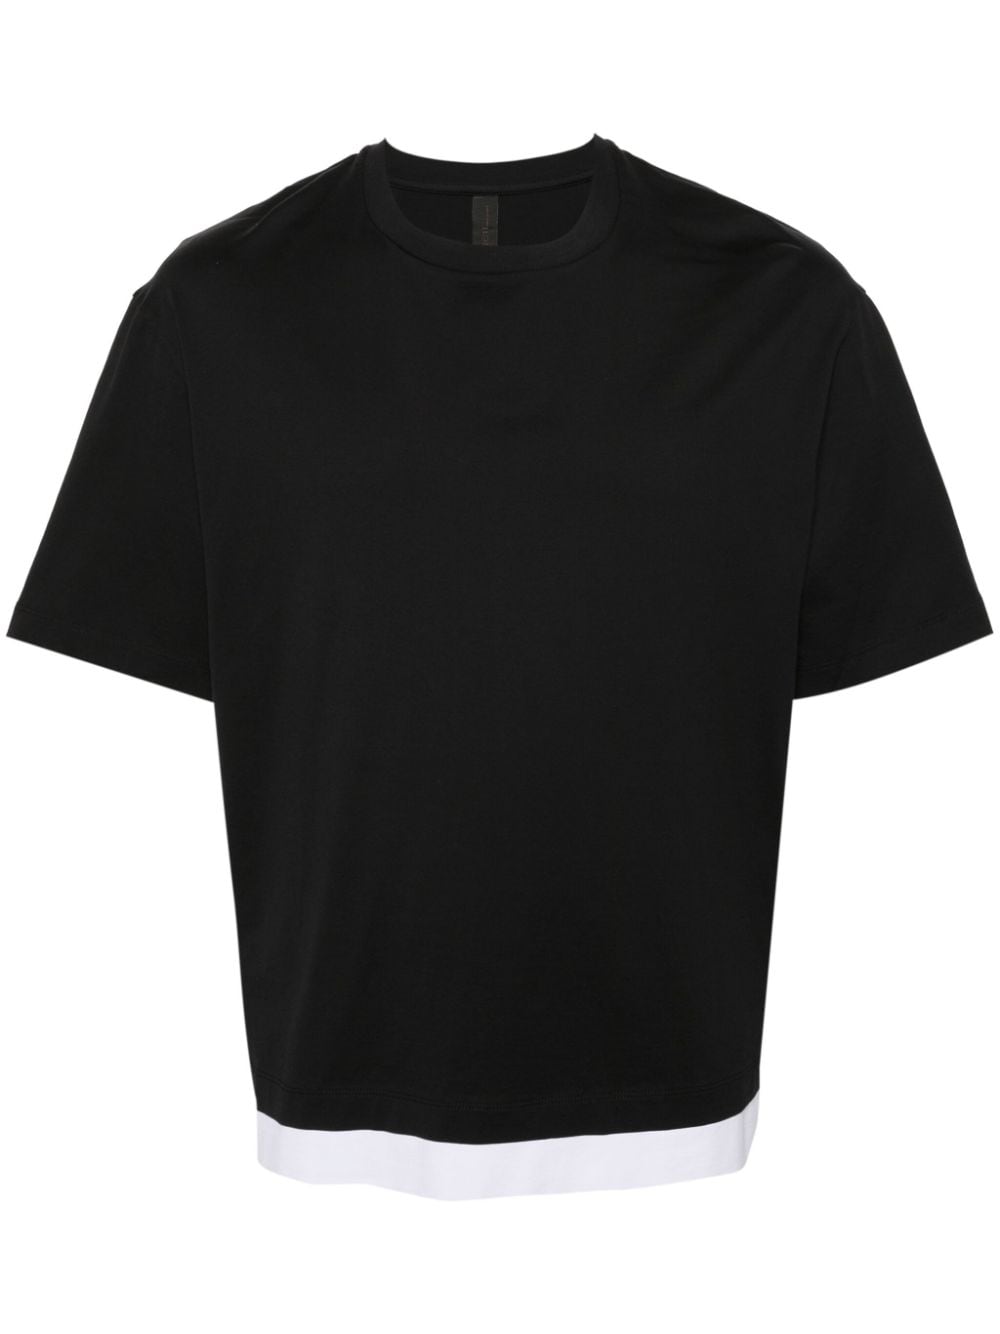 neil barrett t-shirt en coton à design superposé - noir